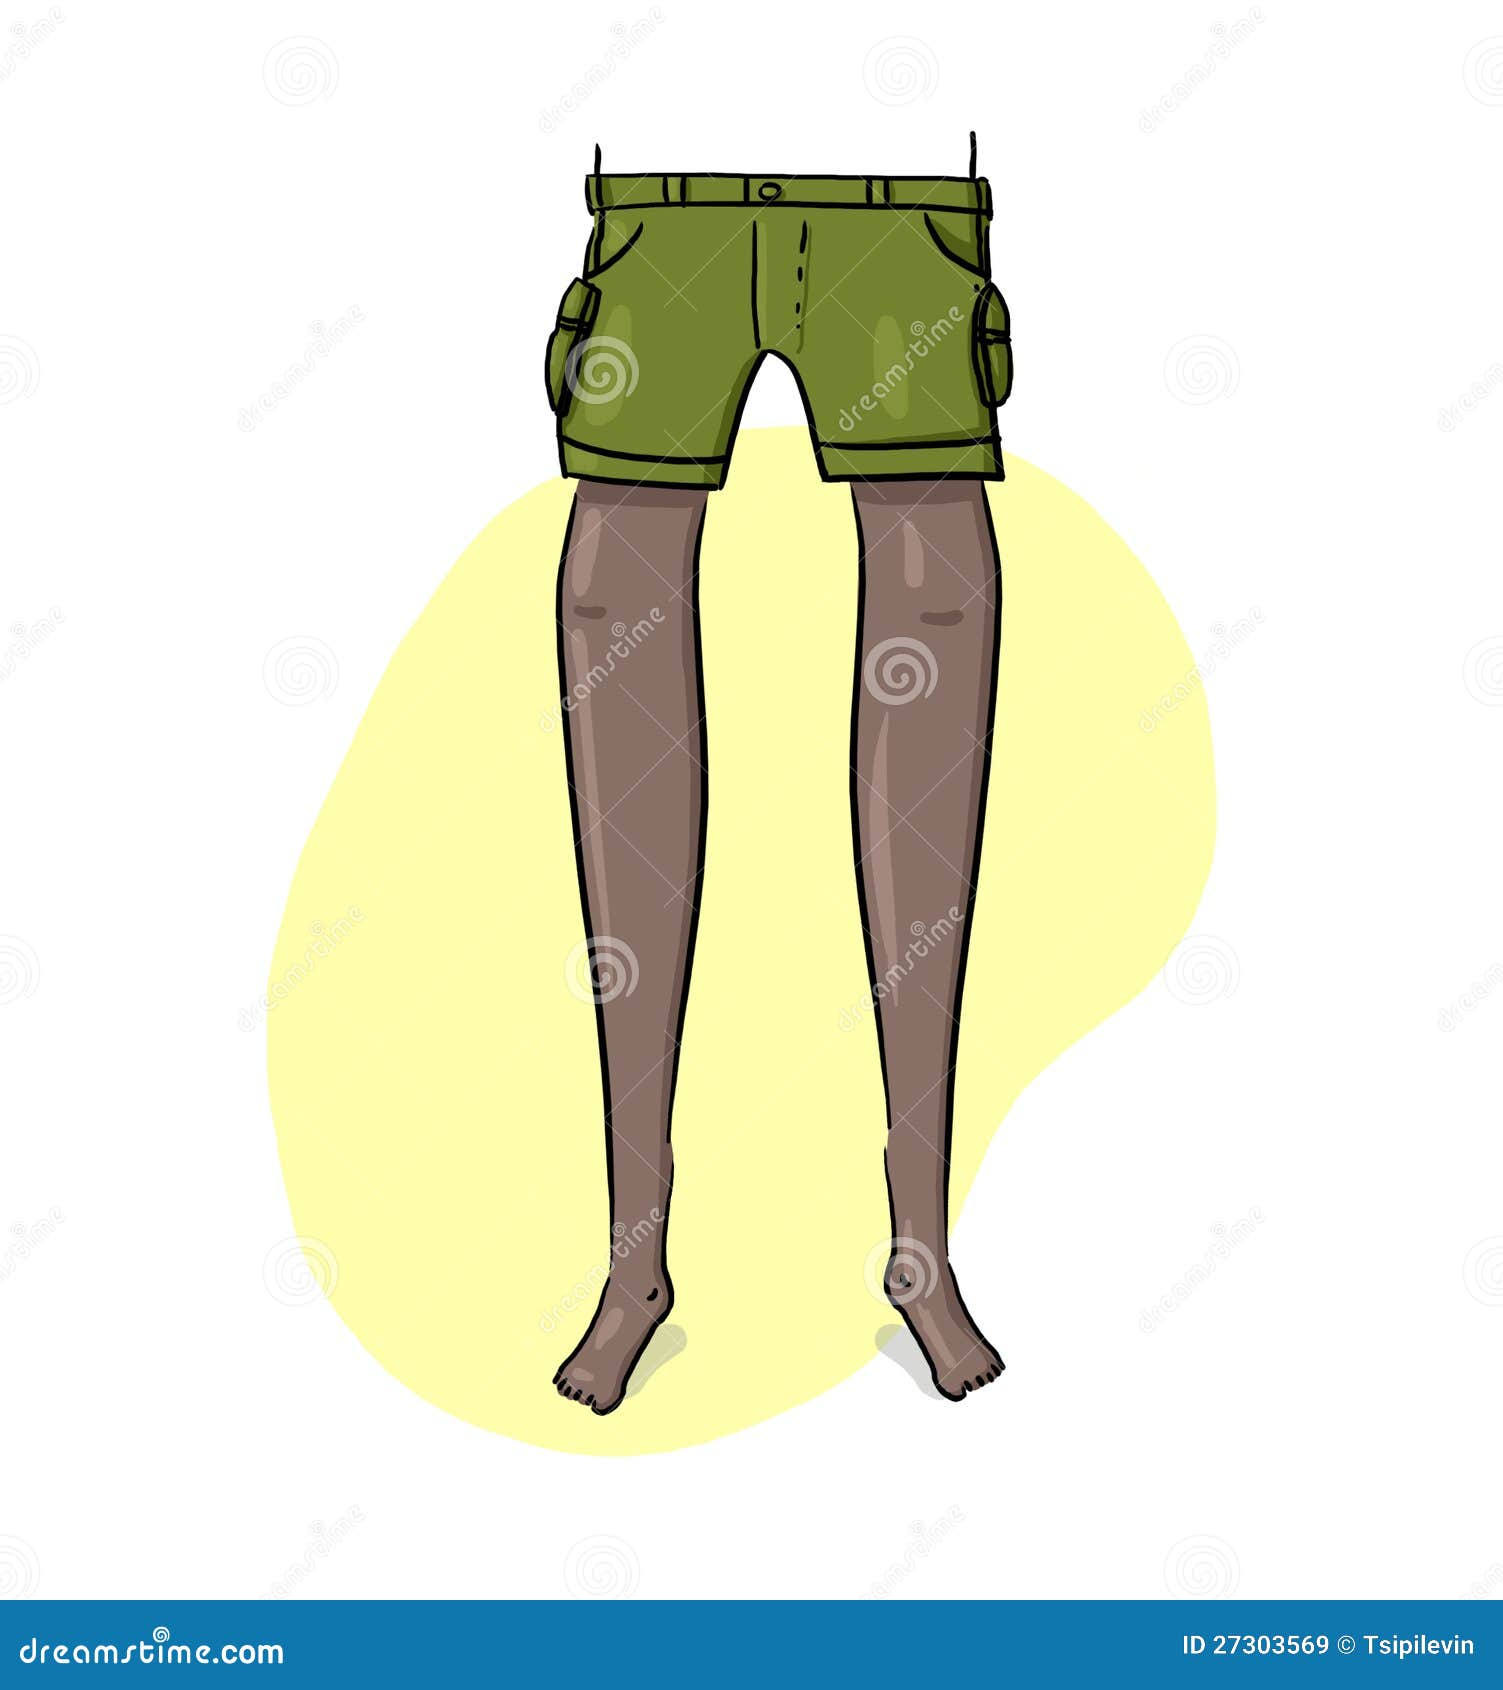 Legs illustration stock illustration. Illustration of yellow - 27303569